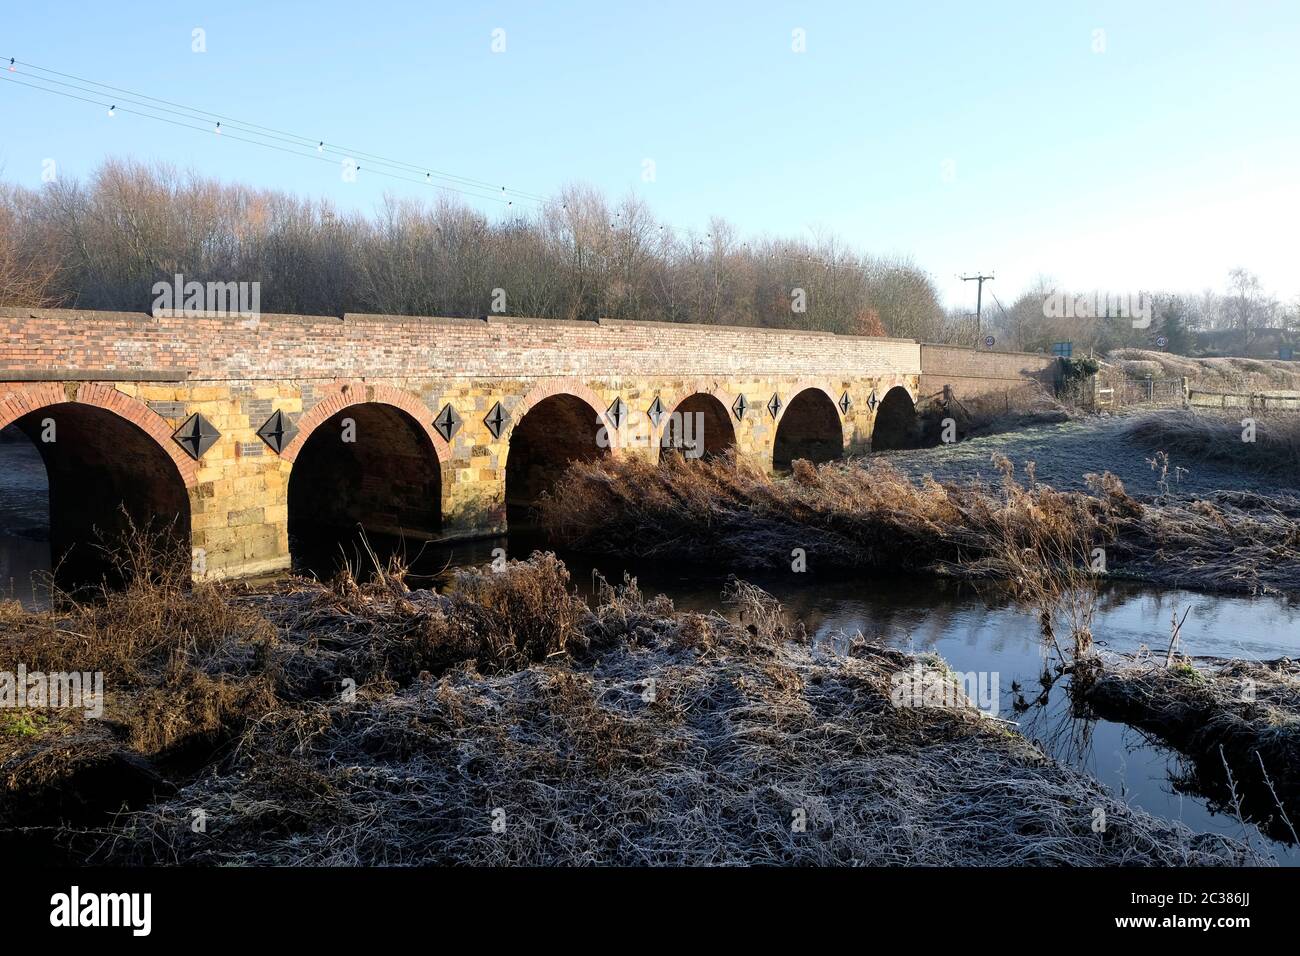 The Bridge over the Stour at Shipston-on-Stour, Warwickshire. Stock Photo